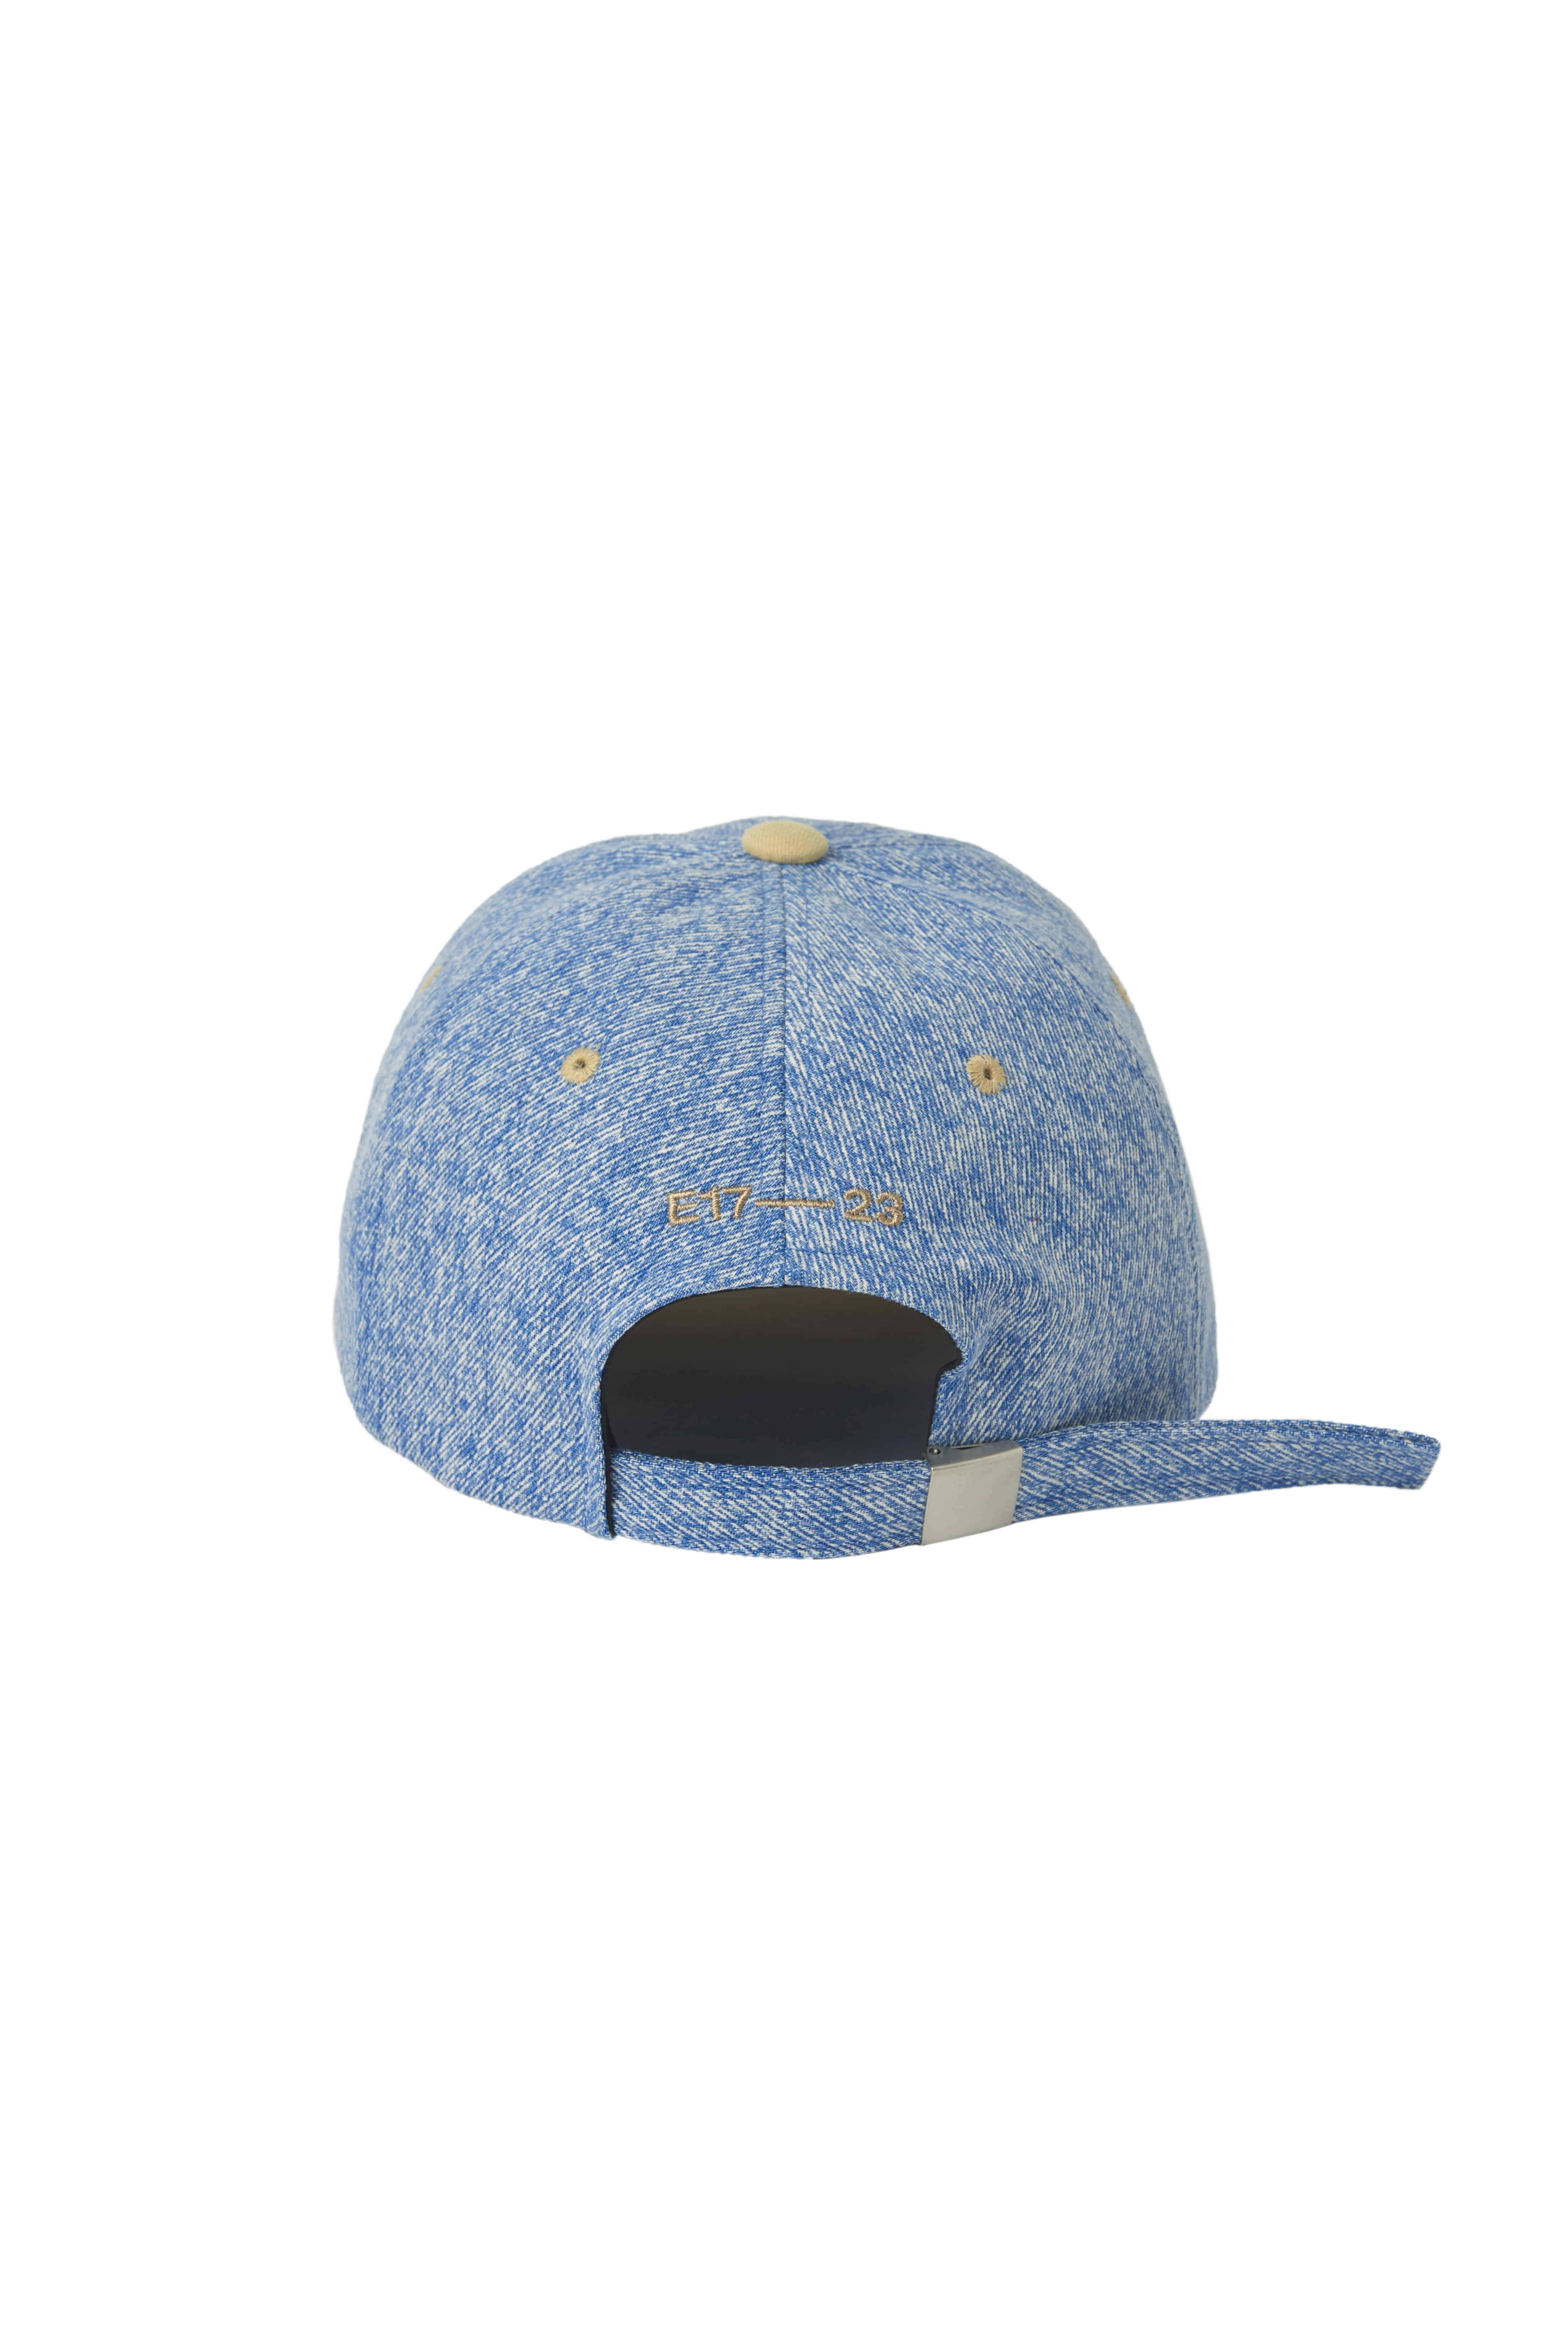 ❗🇰🇷韓國正版❗ emis 帽子 EMIS字母刺繡 新LOGO 牛仔 休閒可調節棒球帽 （3色可選）